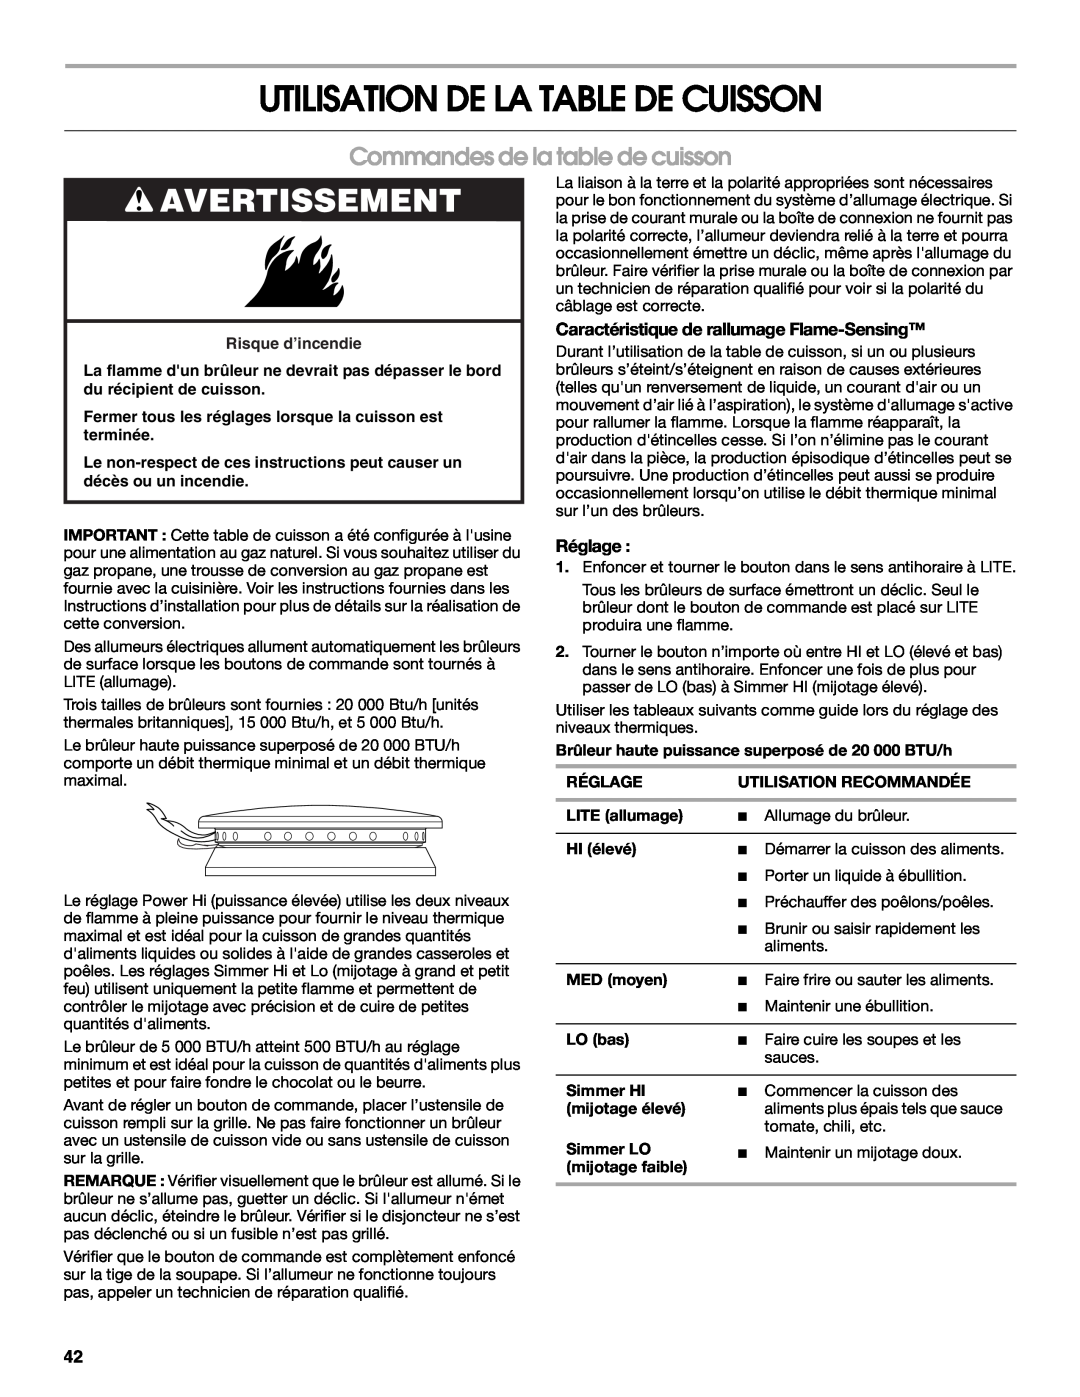 Jenn-Air JDRP430 manual Utilisation De La Table De Cuisson, Commandes de la table de cuisson, Avertissement, Réglage 